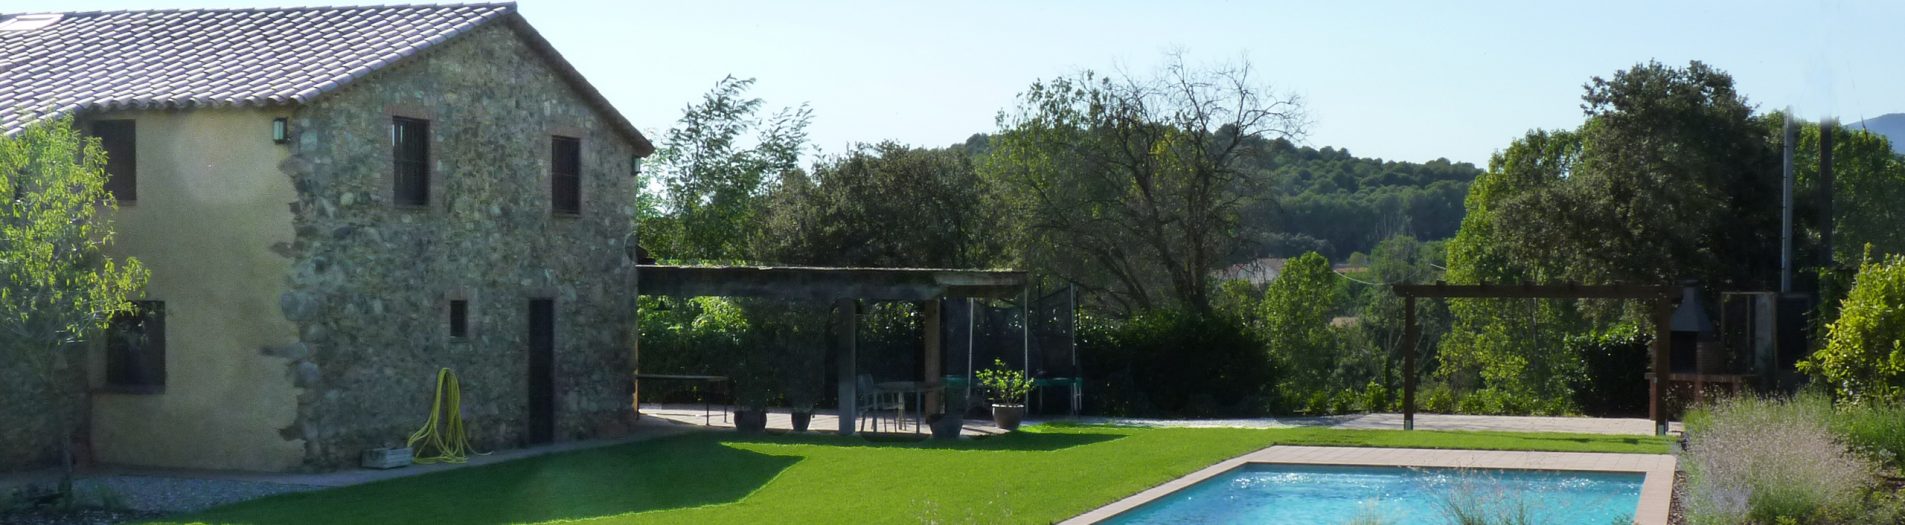 Jardín y piscina en una masia en el Vallès